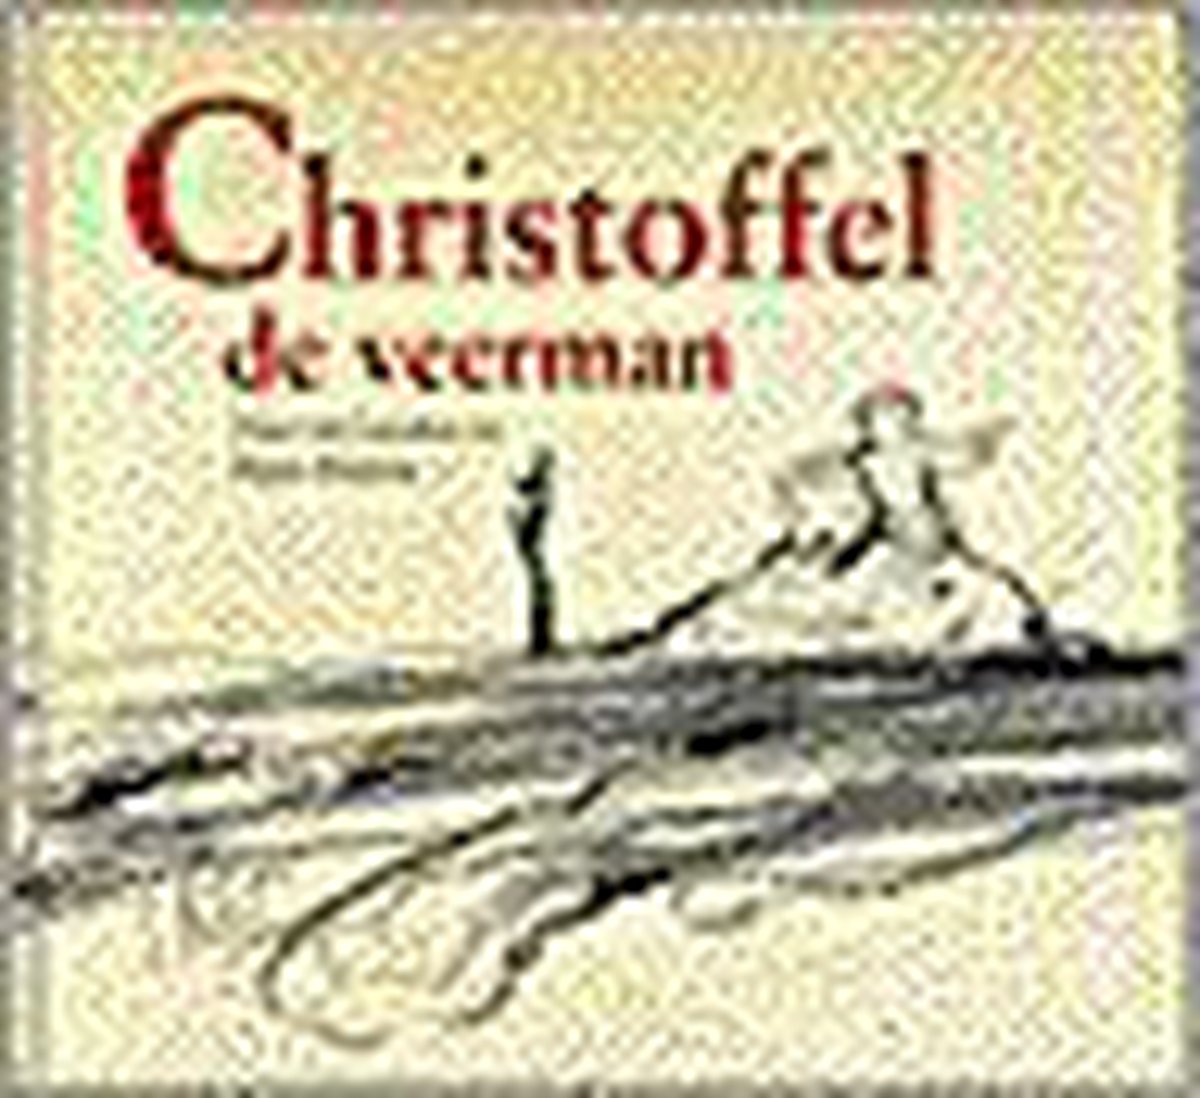 Christoffel De Veerman